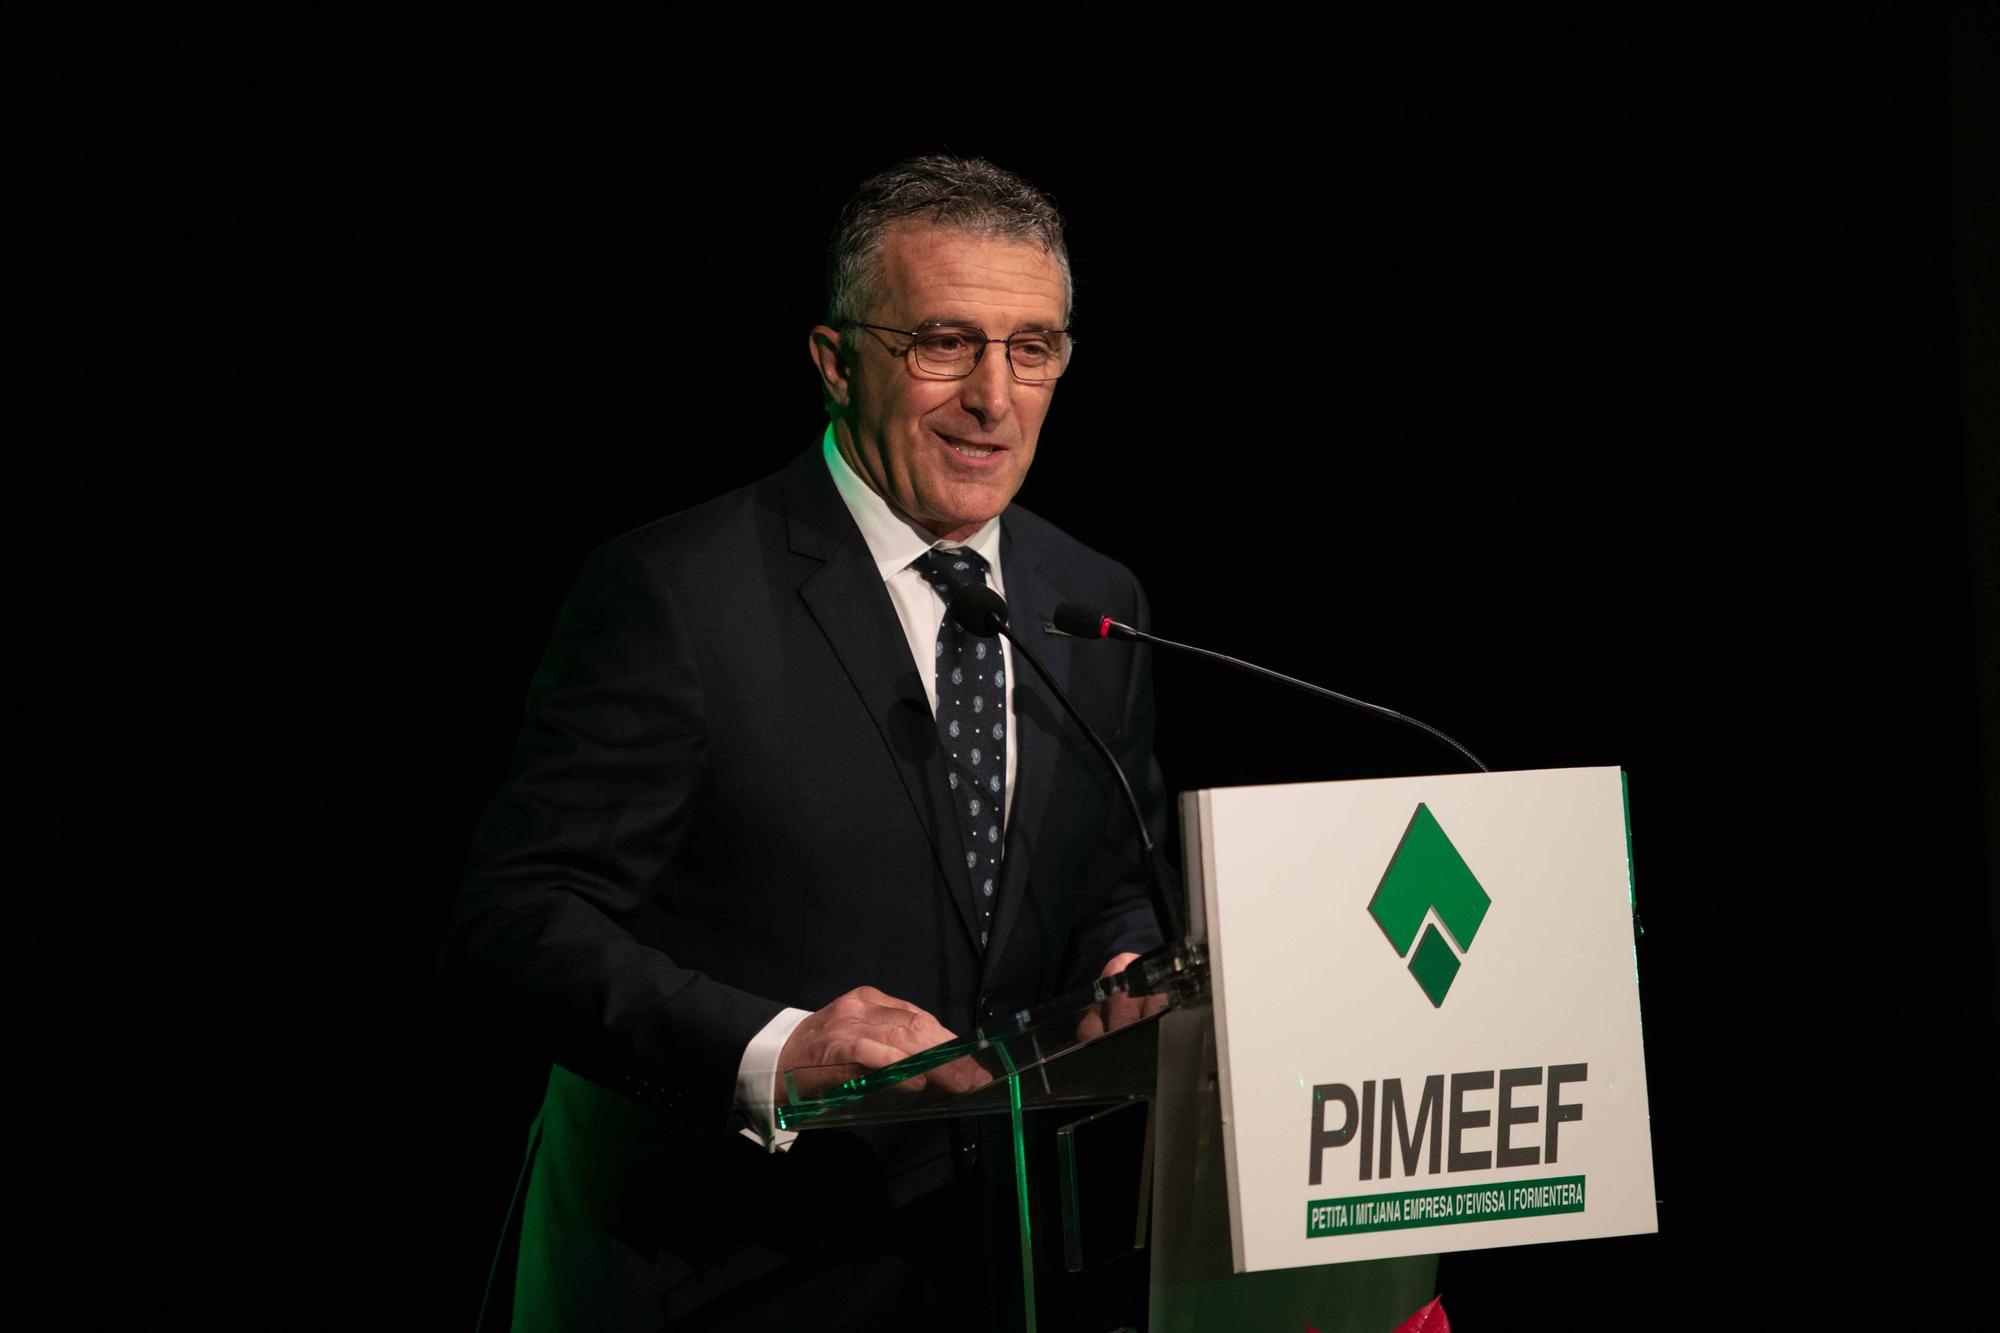 Premios Pimeef 2022